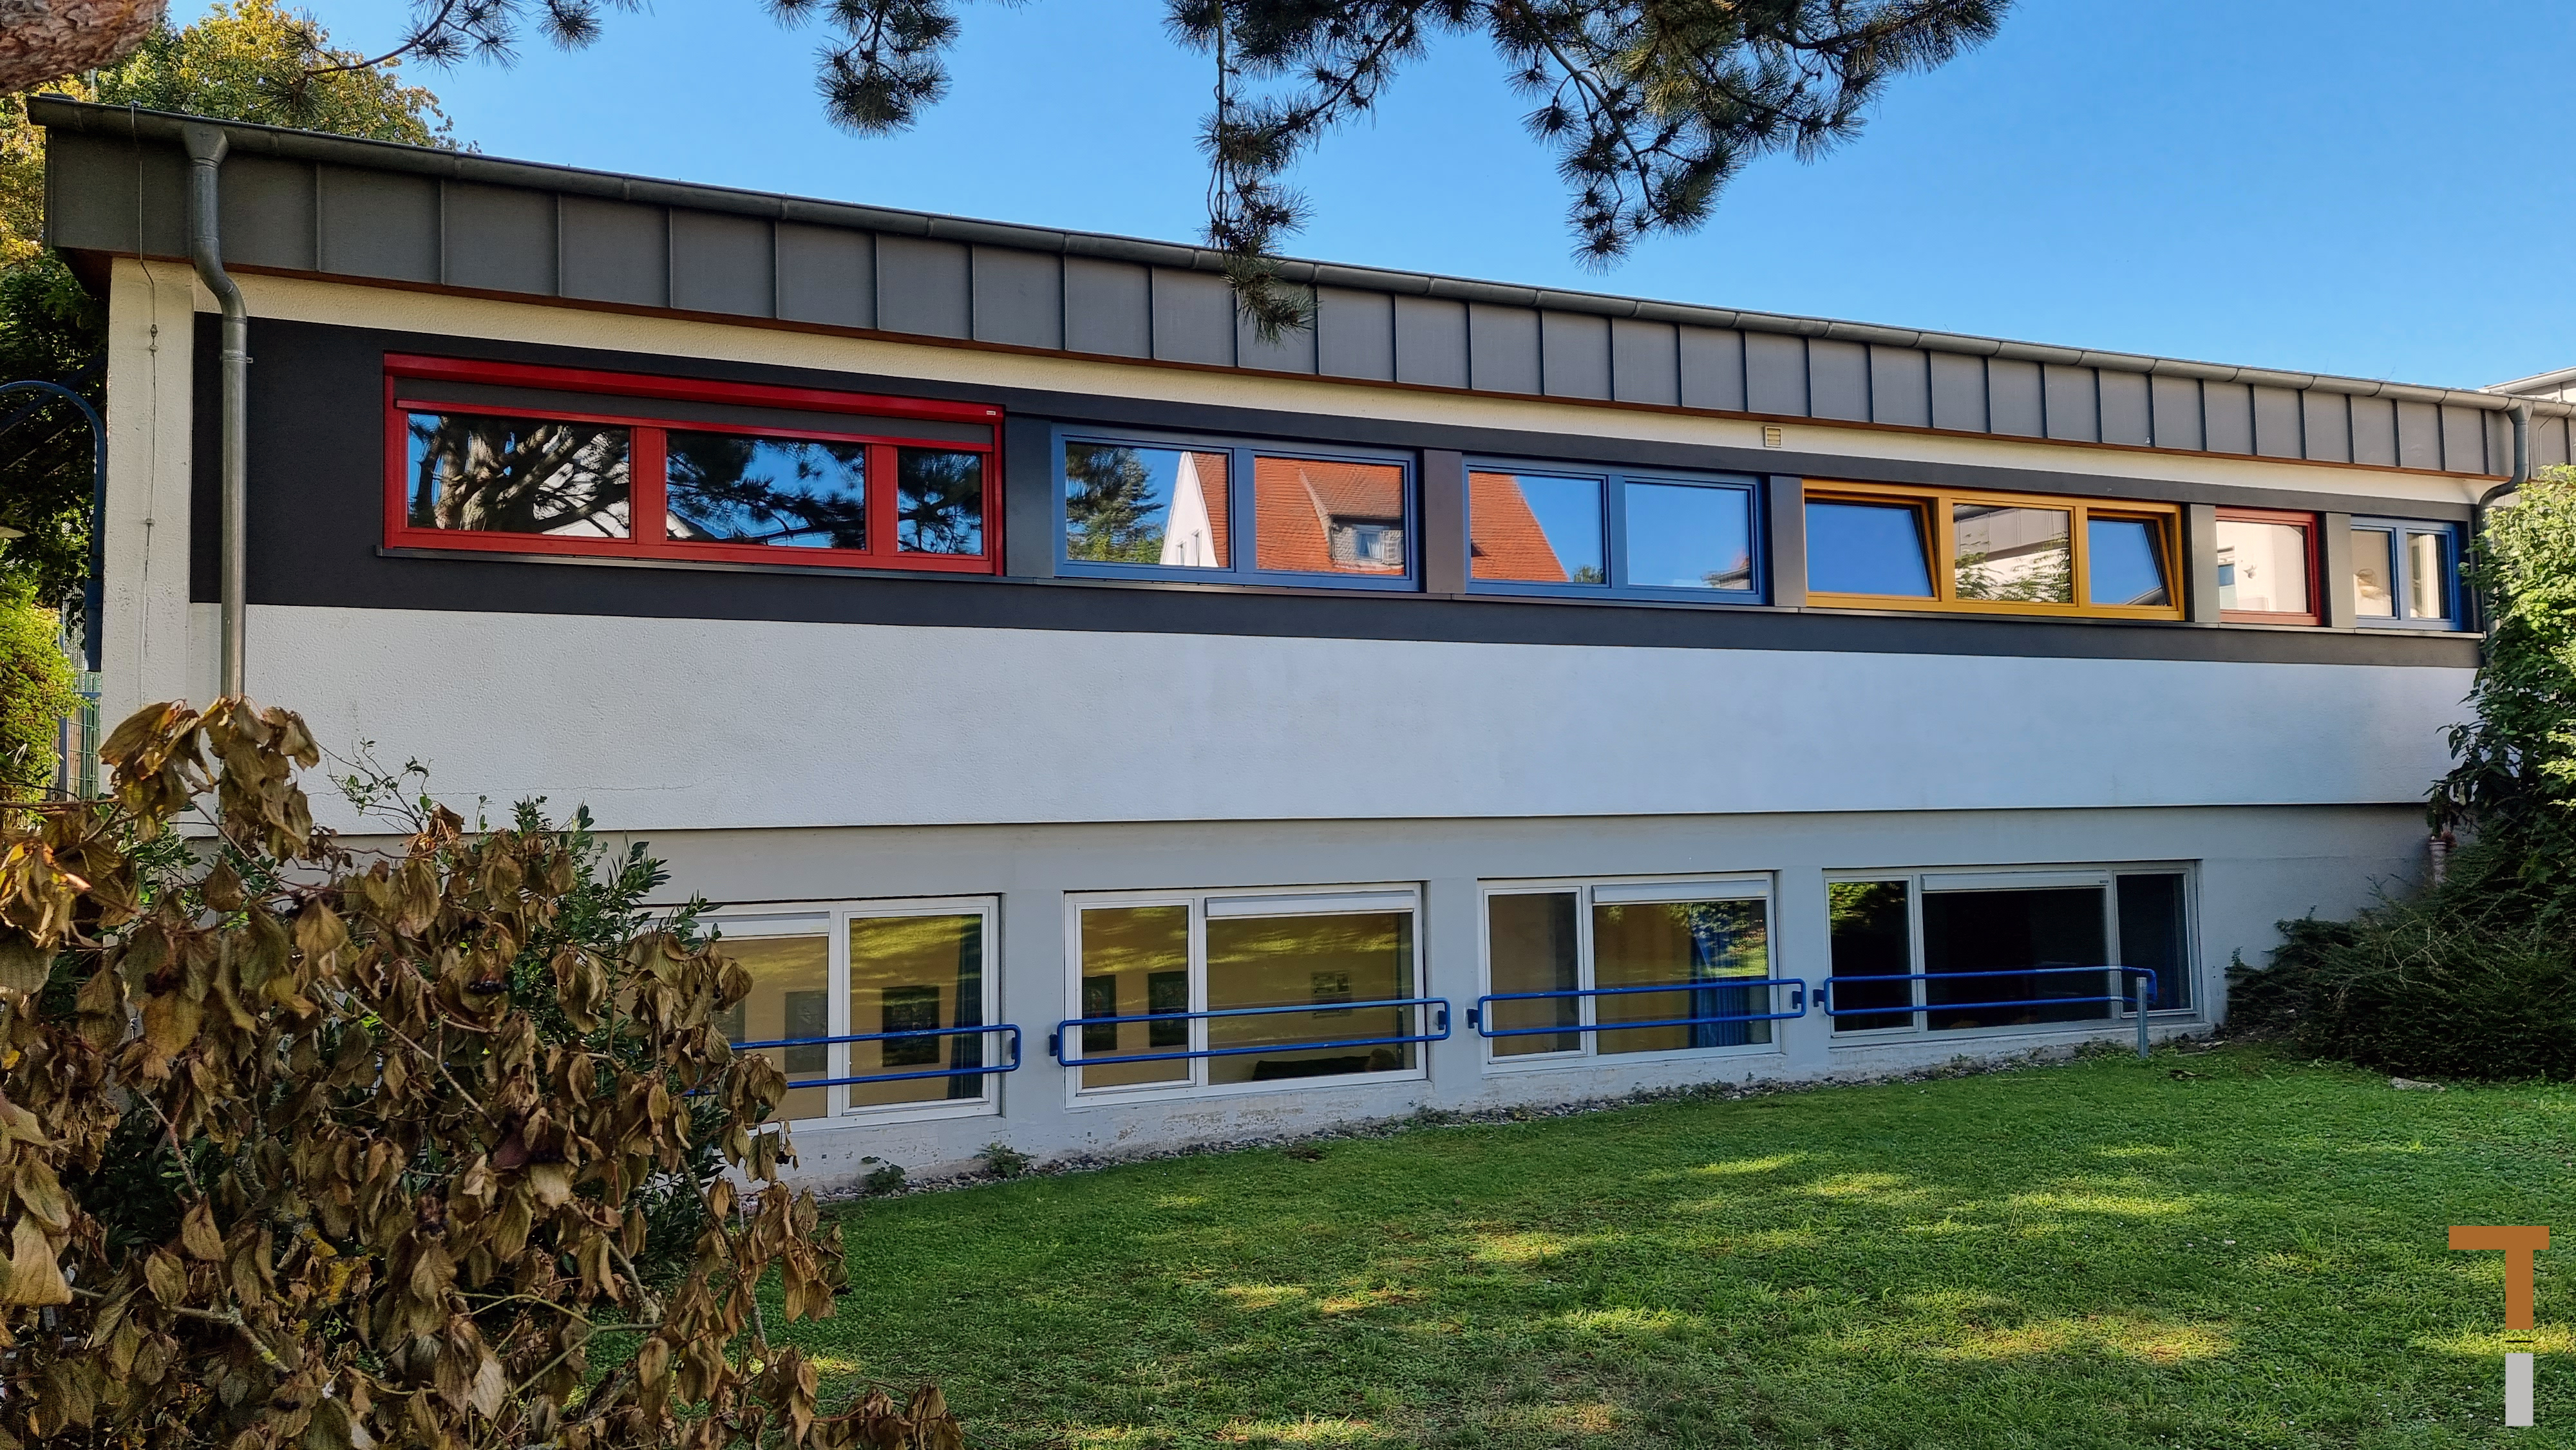 Fenstererneuerung Kindertagesstätte - Rollo soll noch 3-teilig werden, Fliegengitter fehlen noch